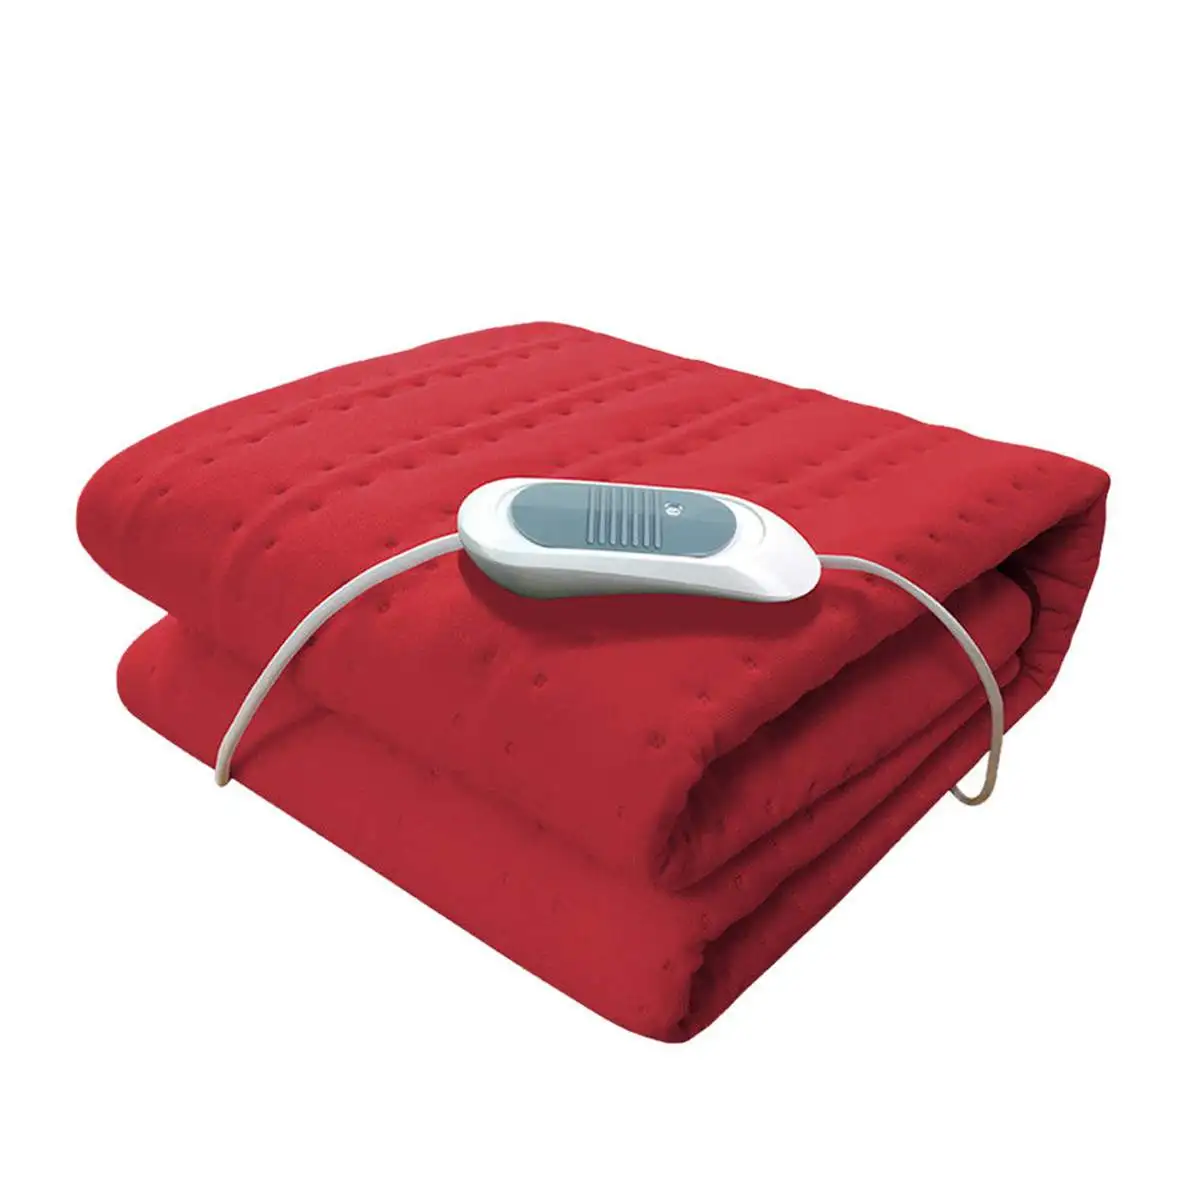 Электрическое одеяло, грелки, наматрасник под кровать, согревающий матрас, зимний коврик для дома, постельные принадлежности, моющиеся, 5 цветов, 150X75 см - Цвет: Красный